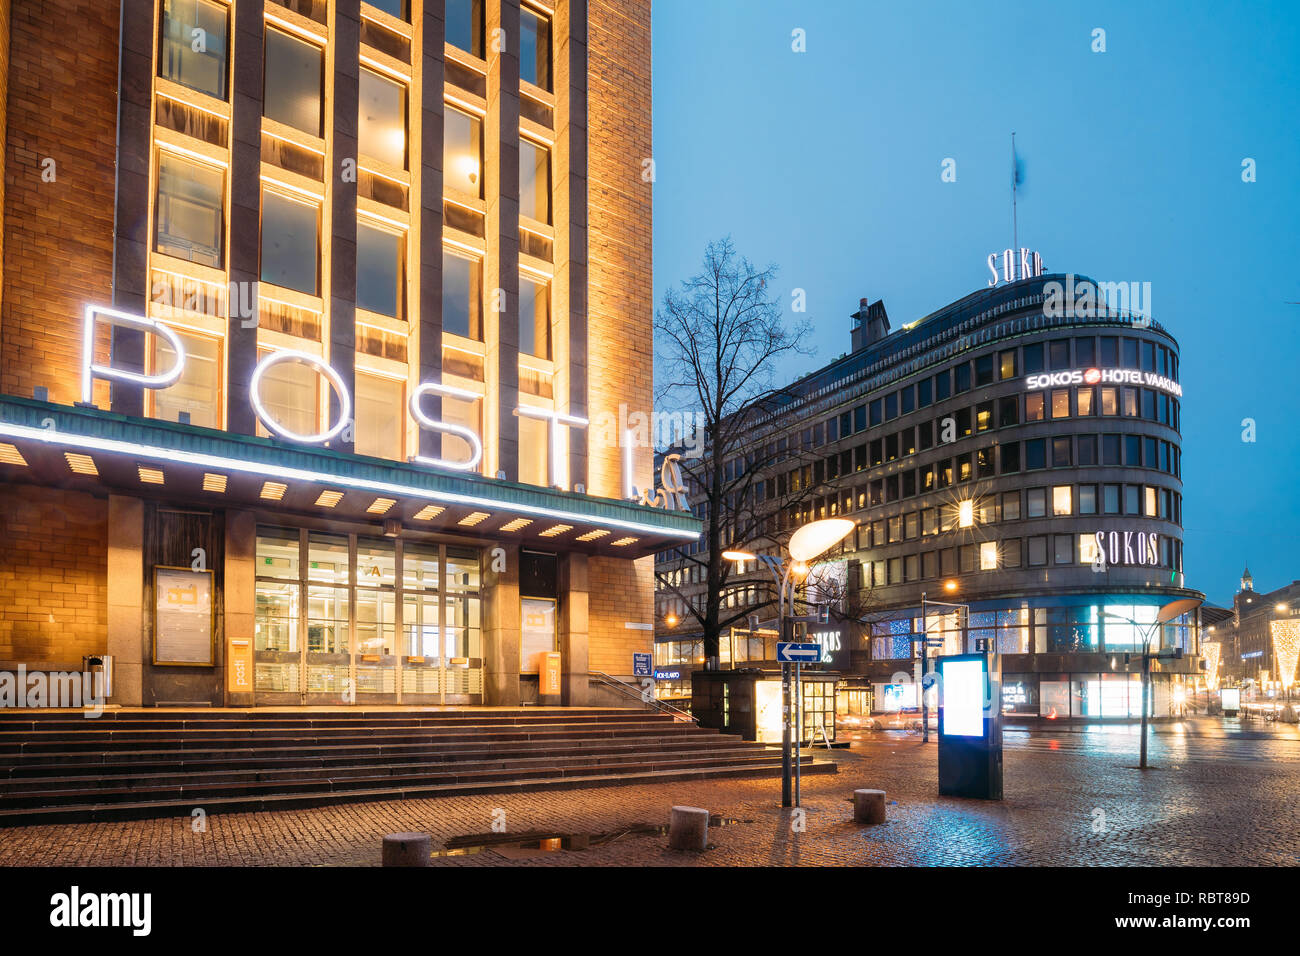 Helsinki, Finland - December 8, 2016: Post Office Building And Original Sokos Hotel In Evening Night Illumination. Stock Photo